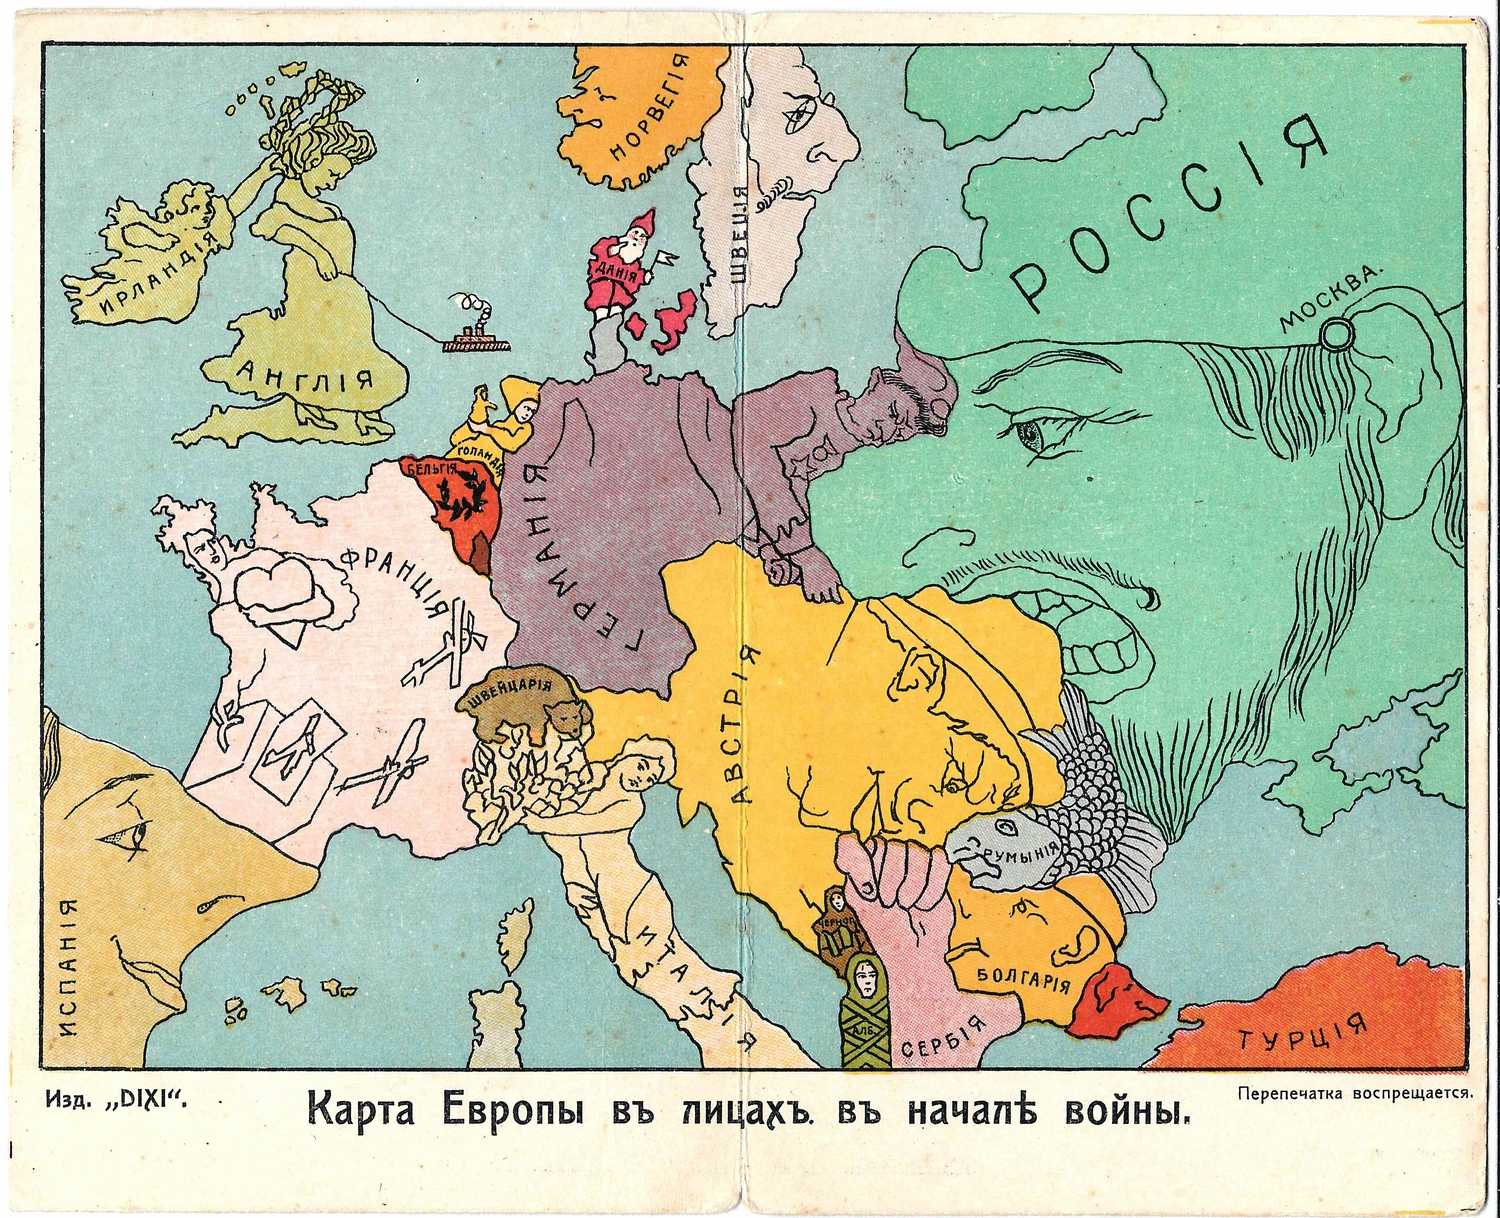 Открытка (двойная) «Карта Европы в лицах в начале войны».  Издание «DIXI», 1914.